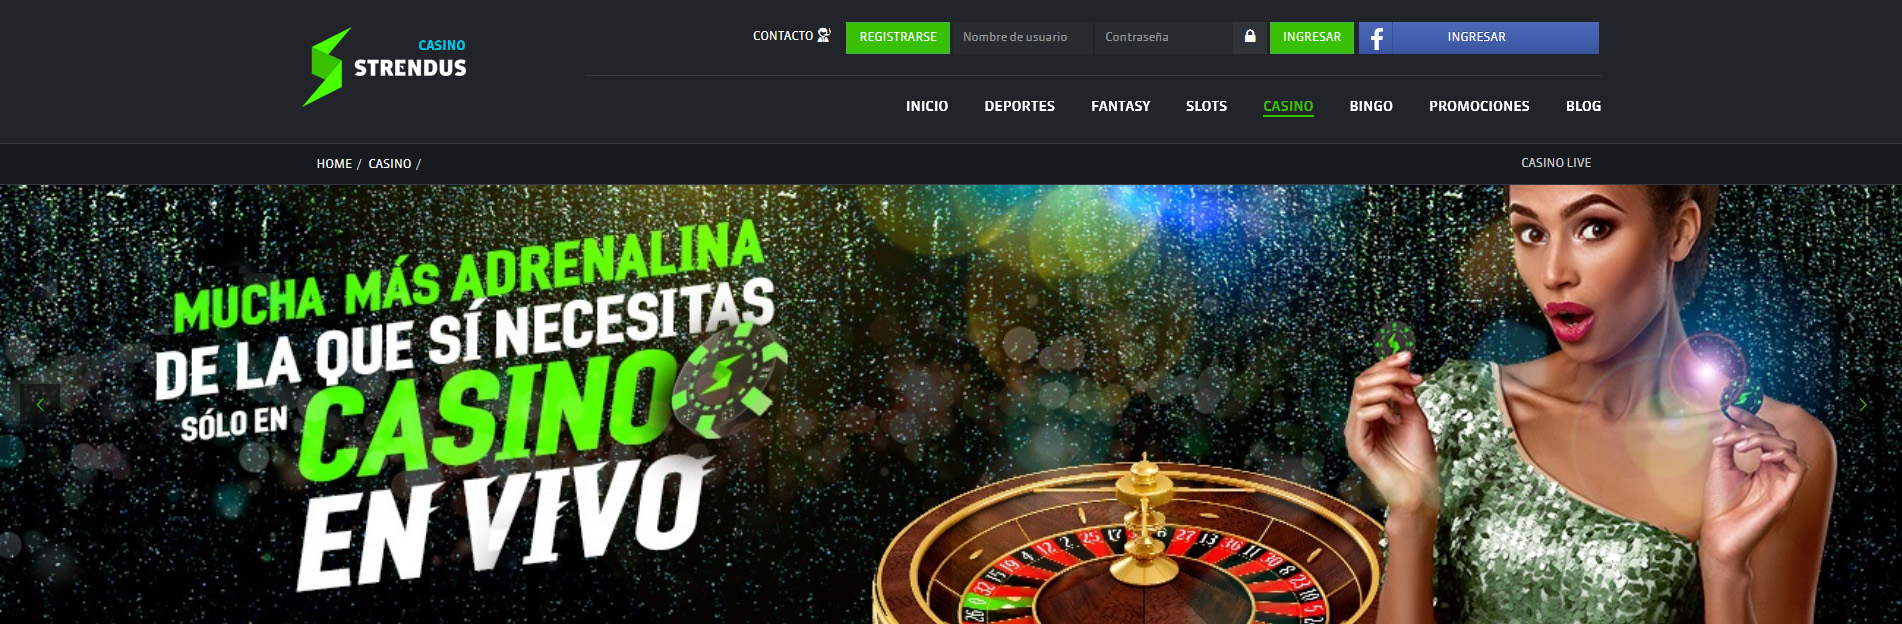 Strendus casino en linea página principal